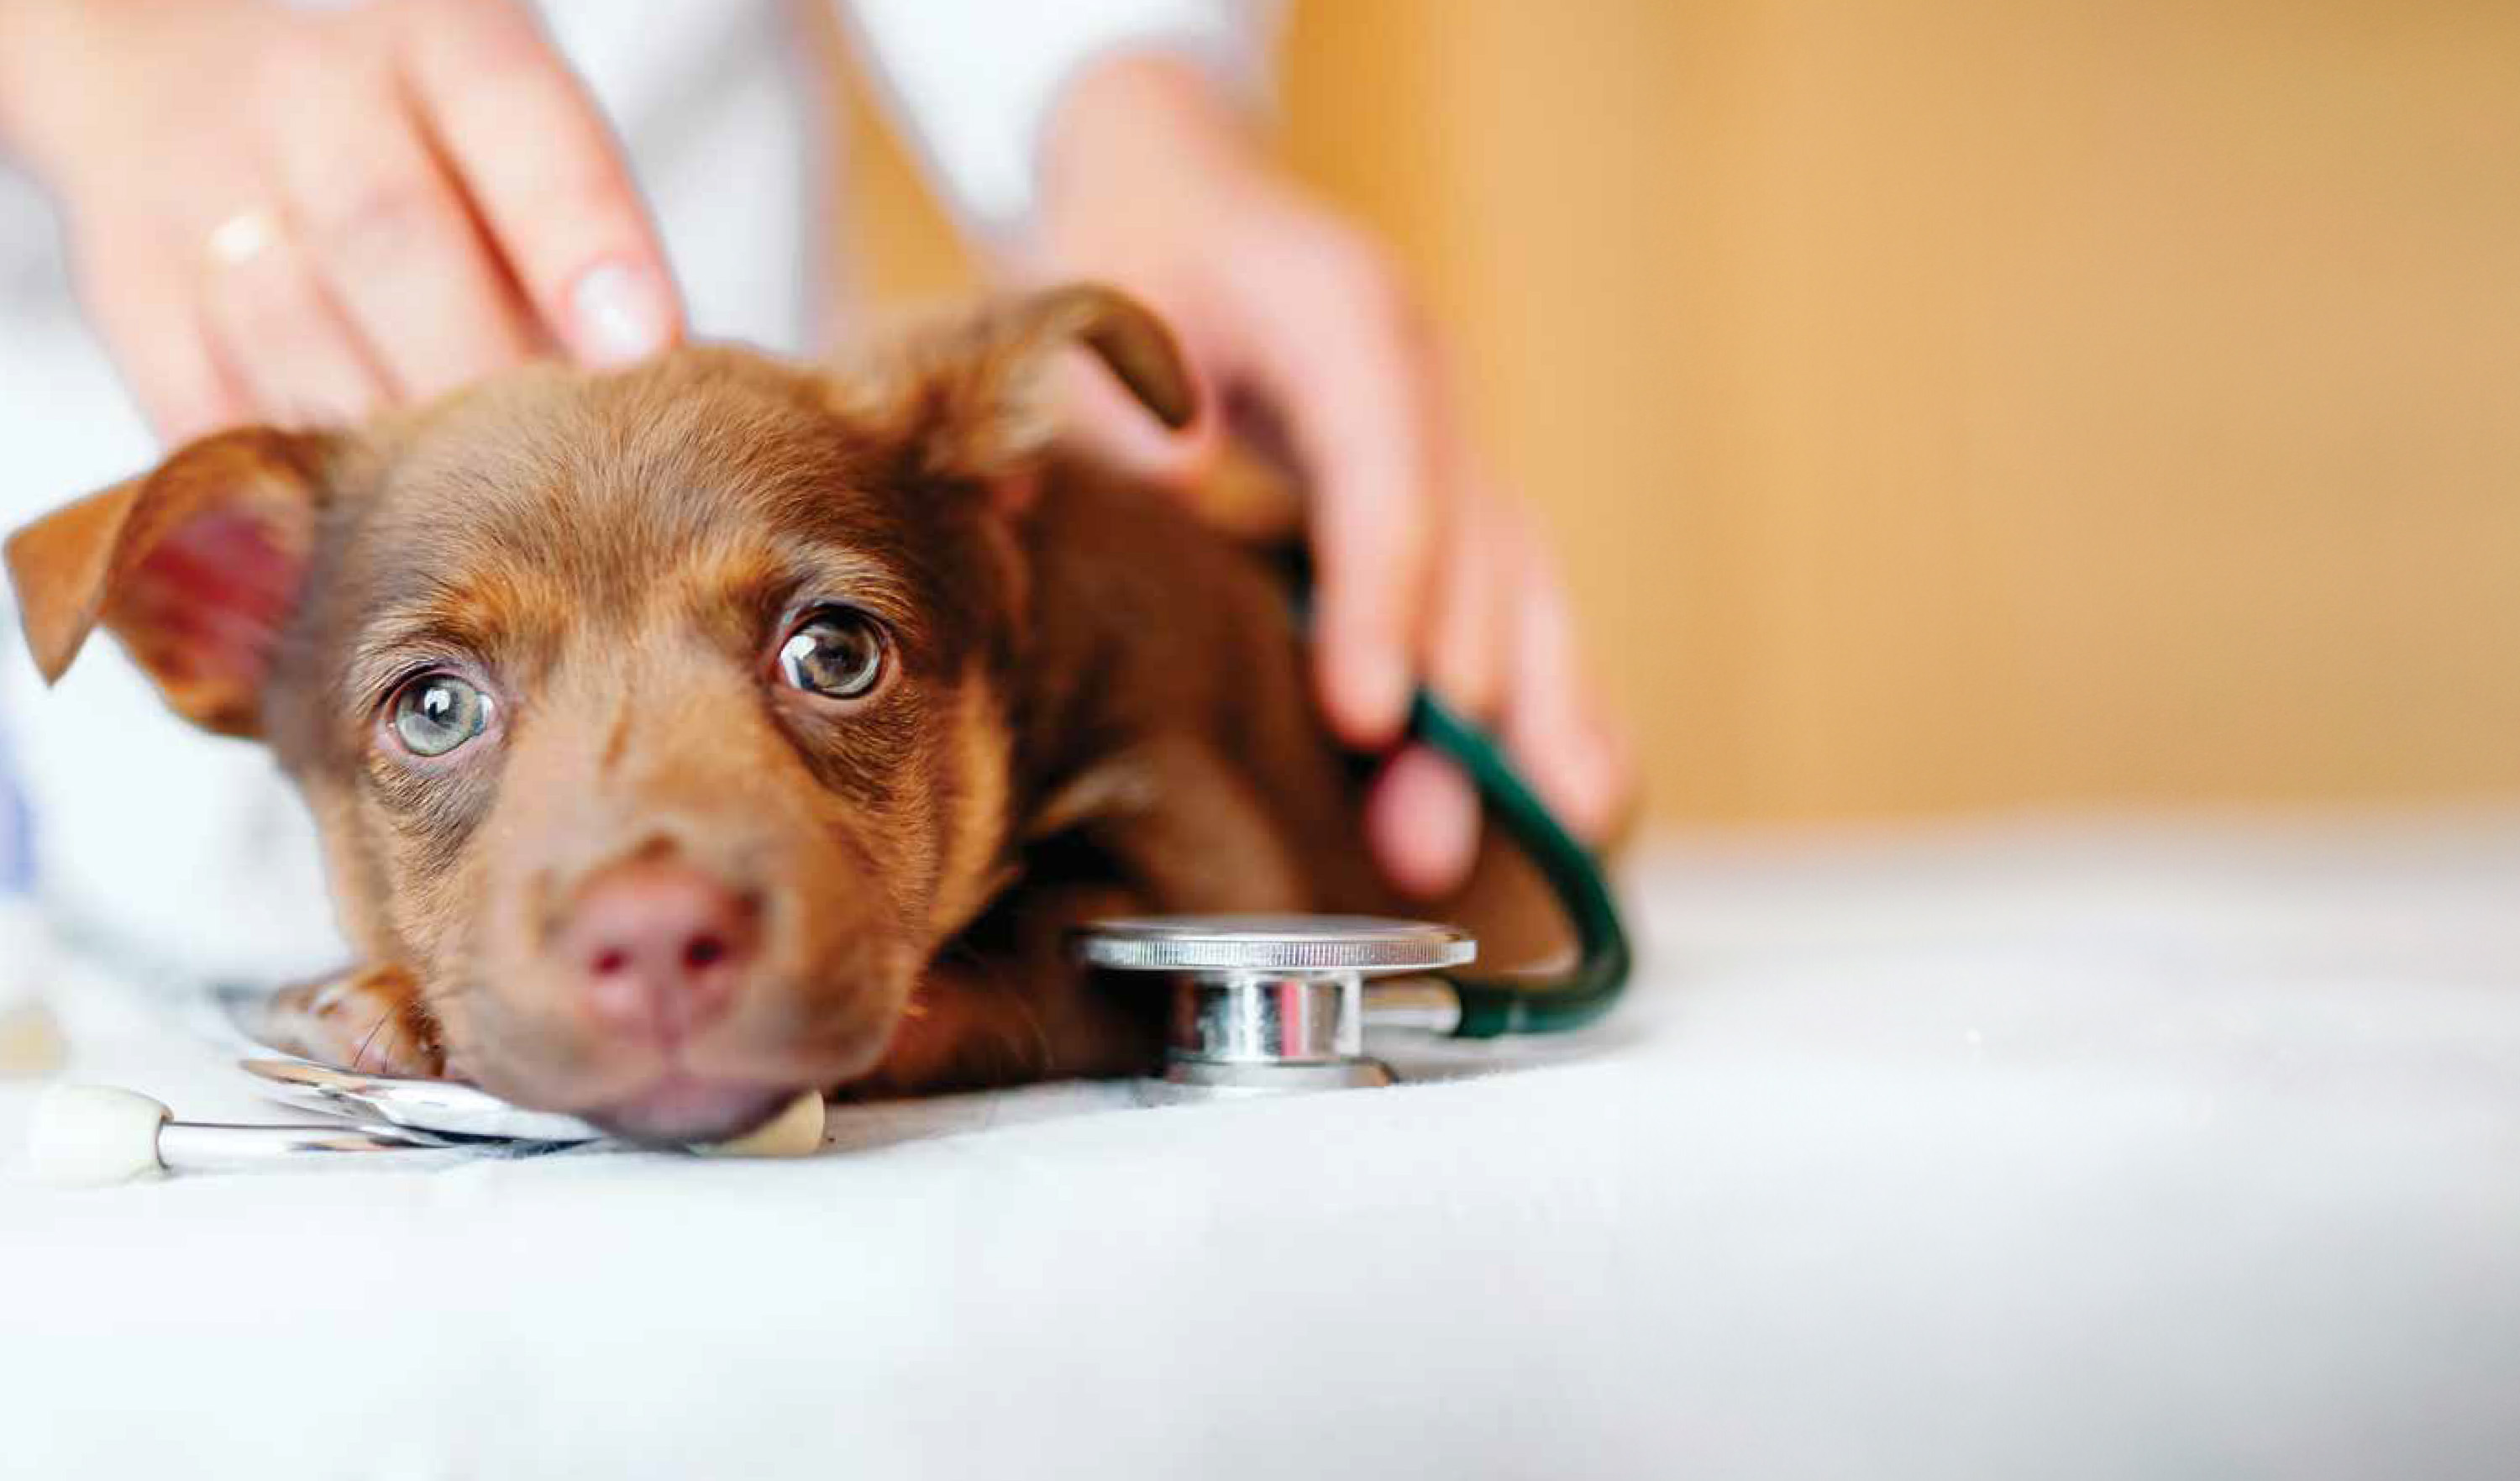 
Un chien allongé sur une table pendant qu'un vétérinaire vérifie son battement de cœur avec un stéthoscope.